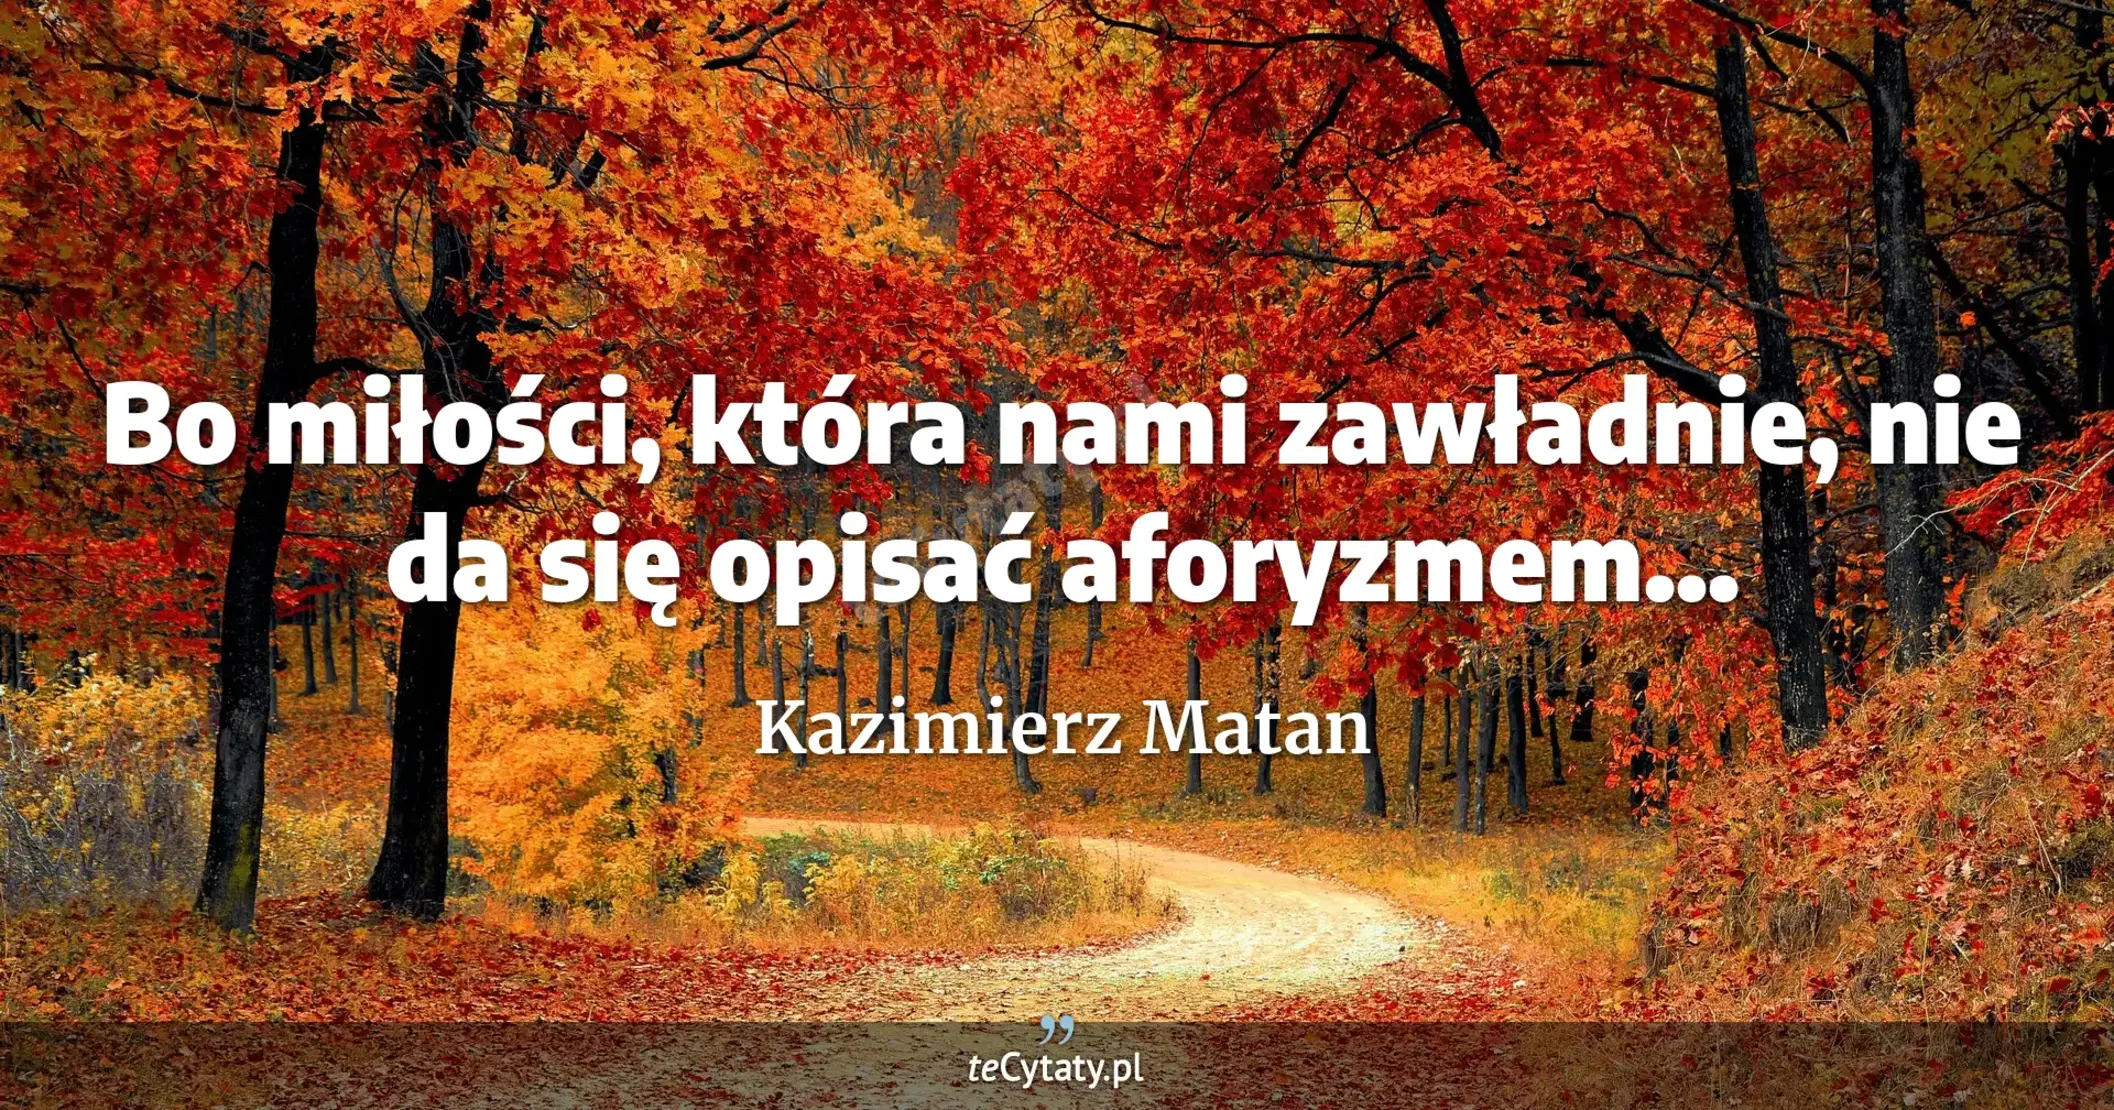 Bo miłości, która nami zawładnie, nie da się opisać aforyzmem... - Kazimierz Matan